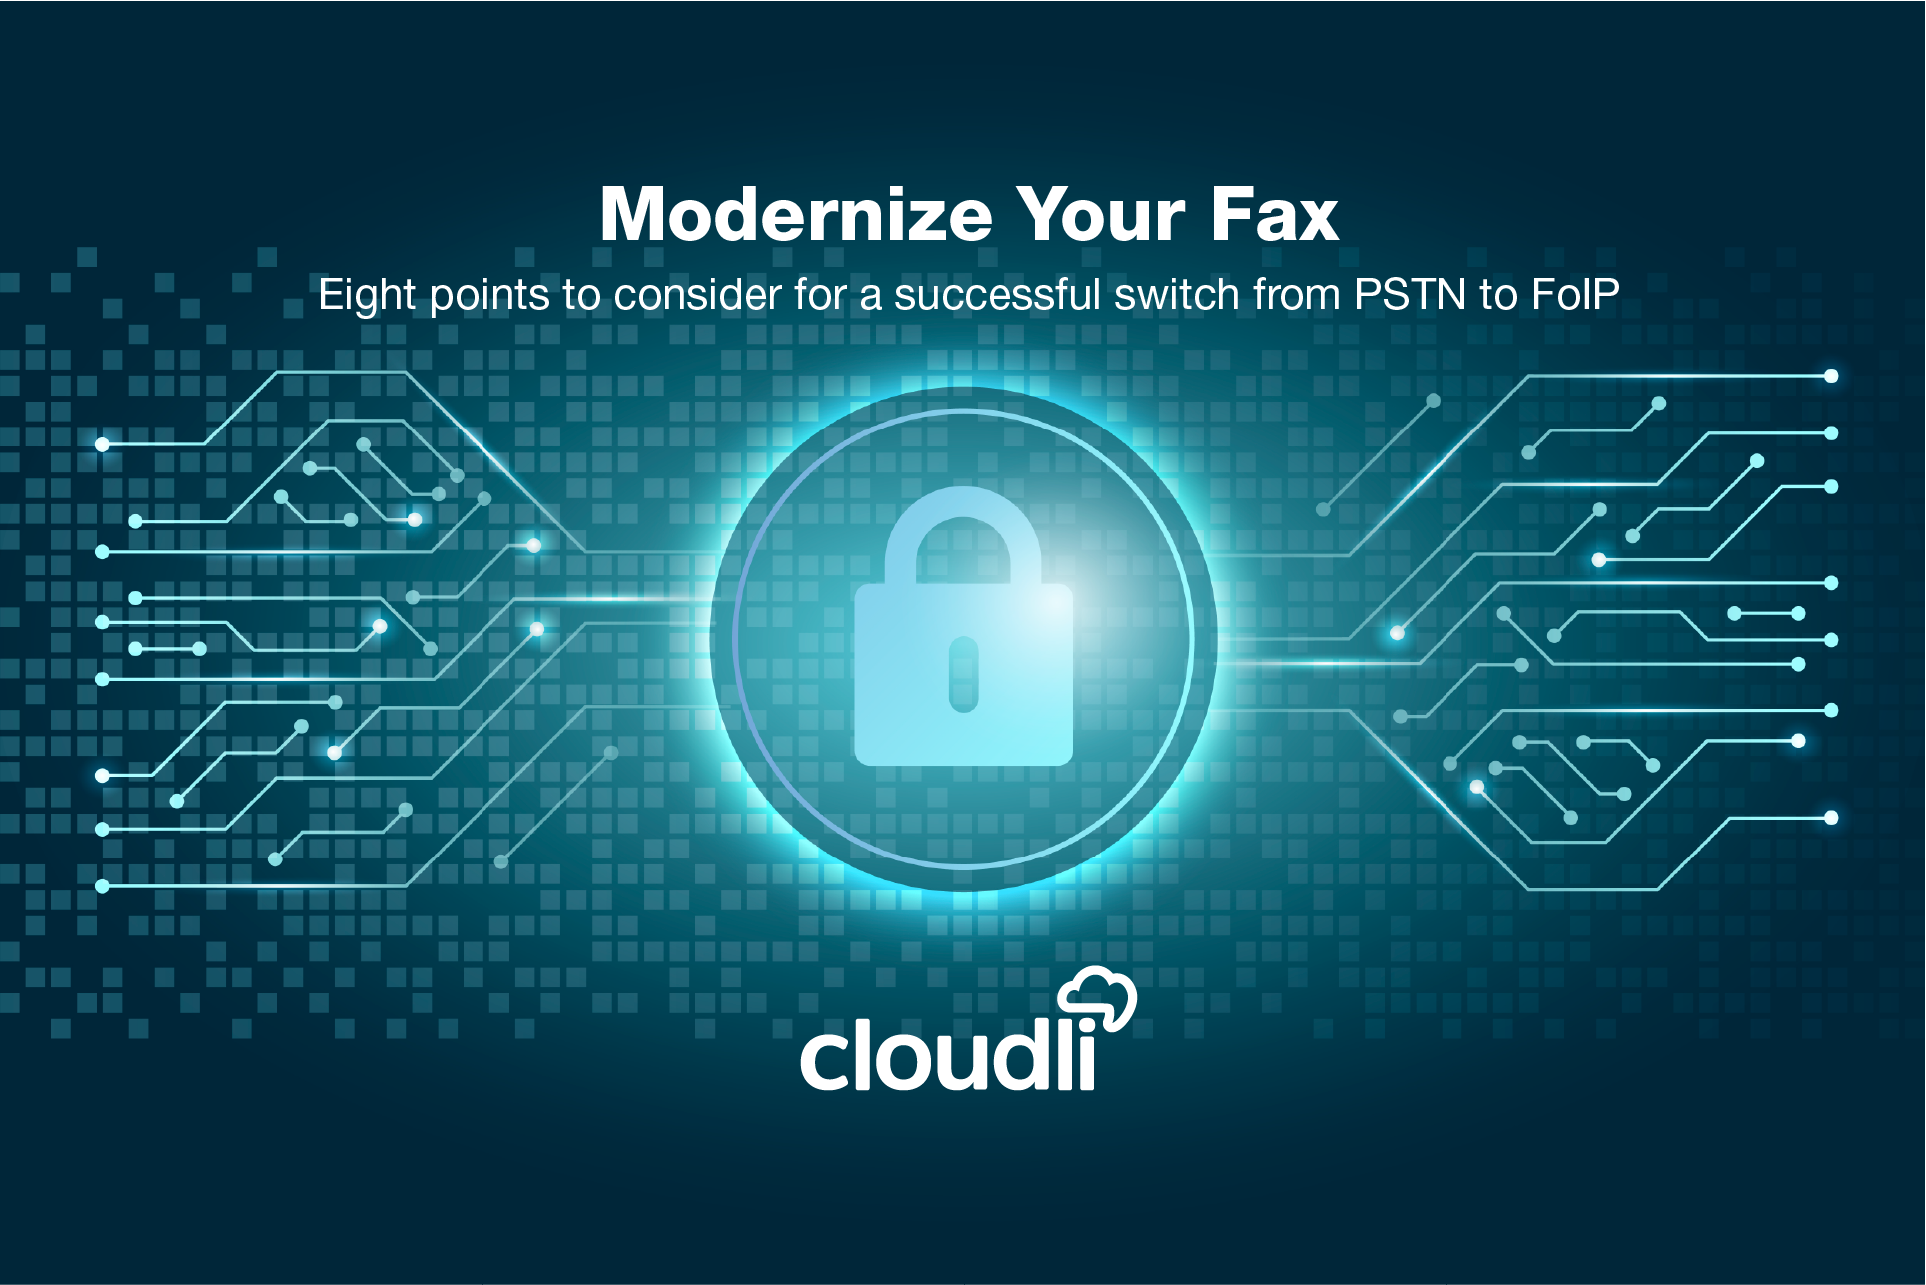 Modernize-Your-Fax_EN_2